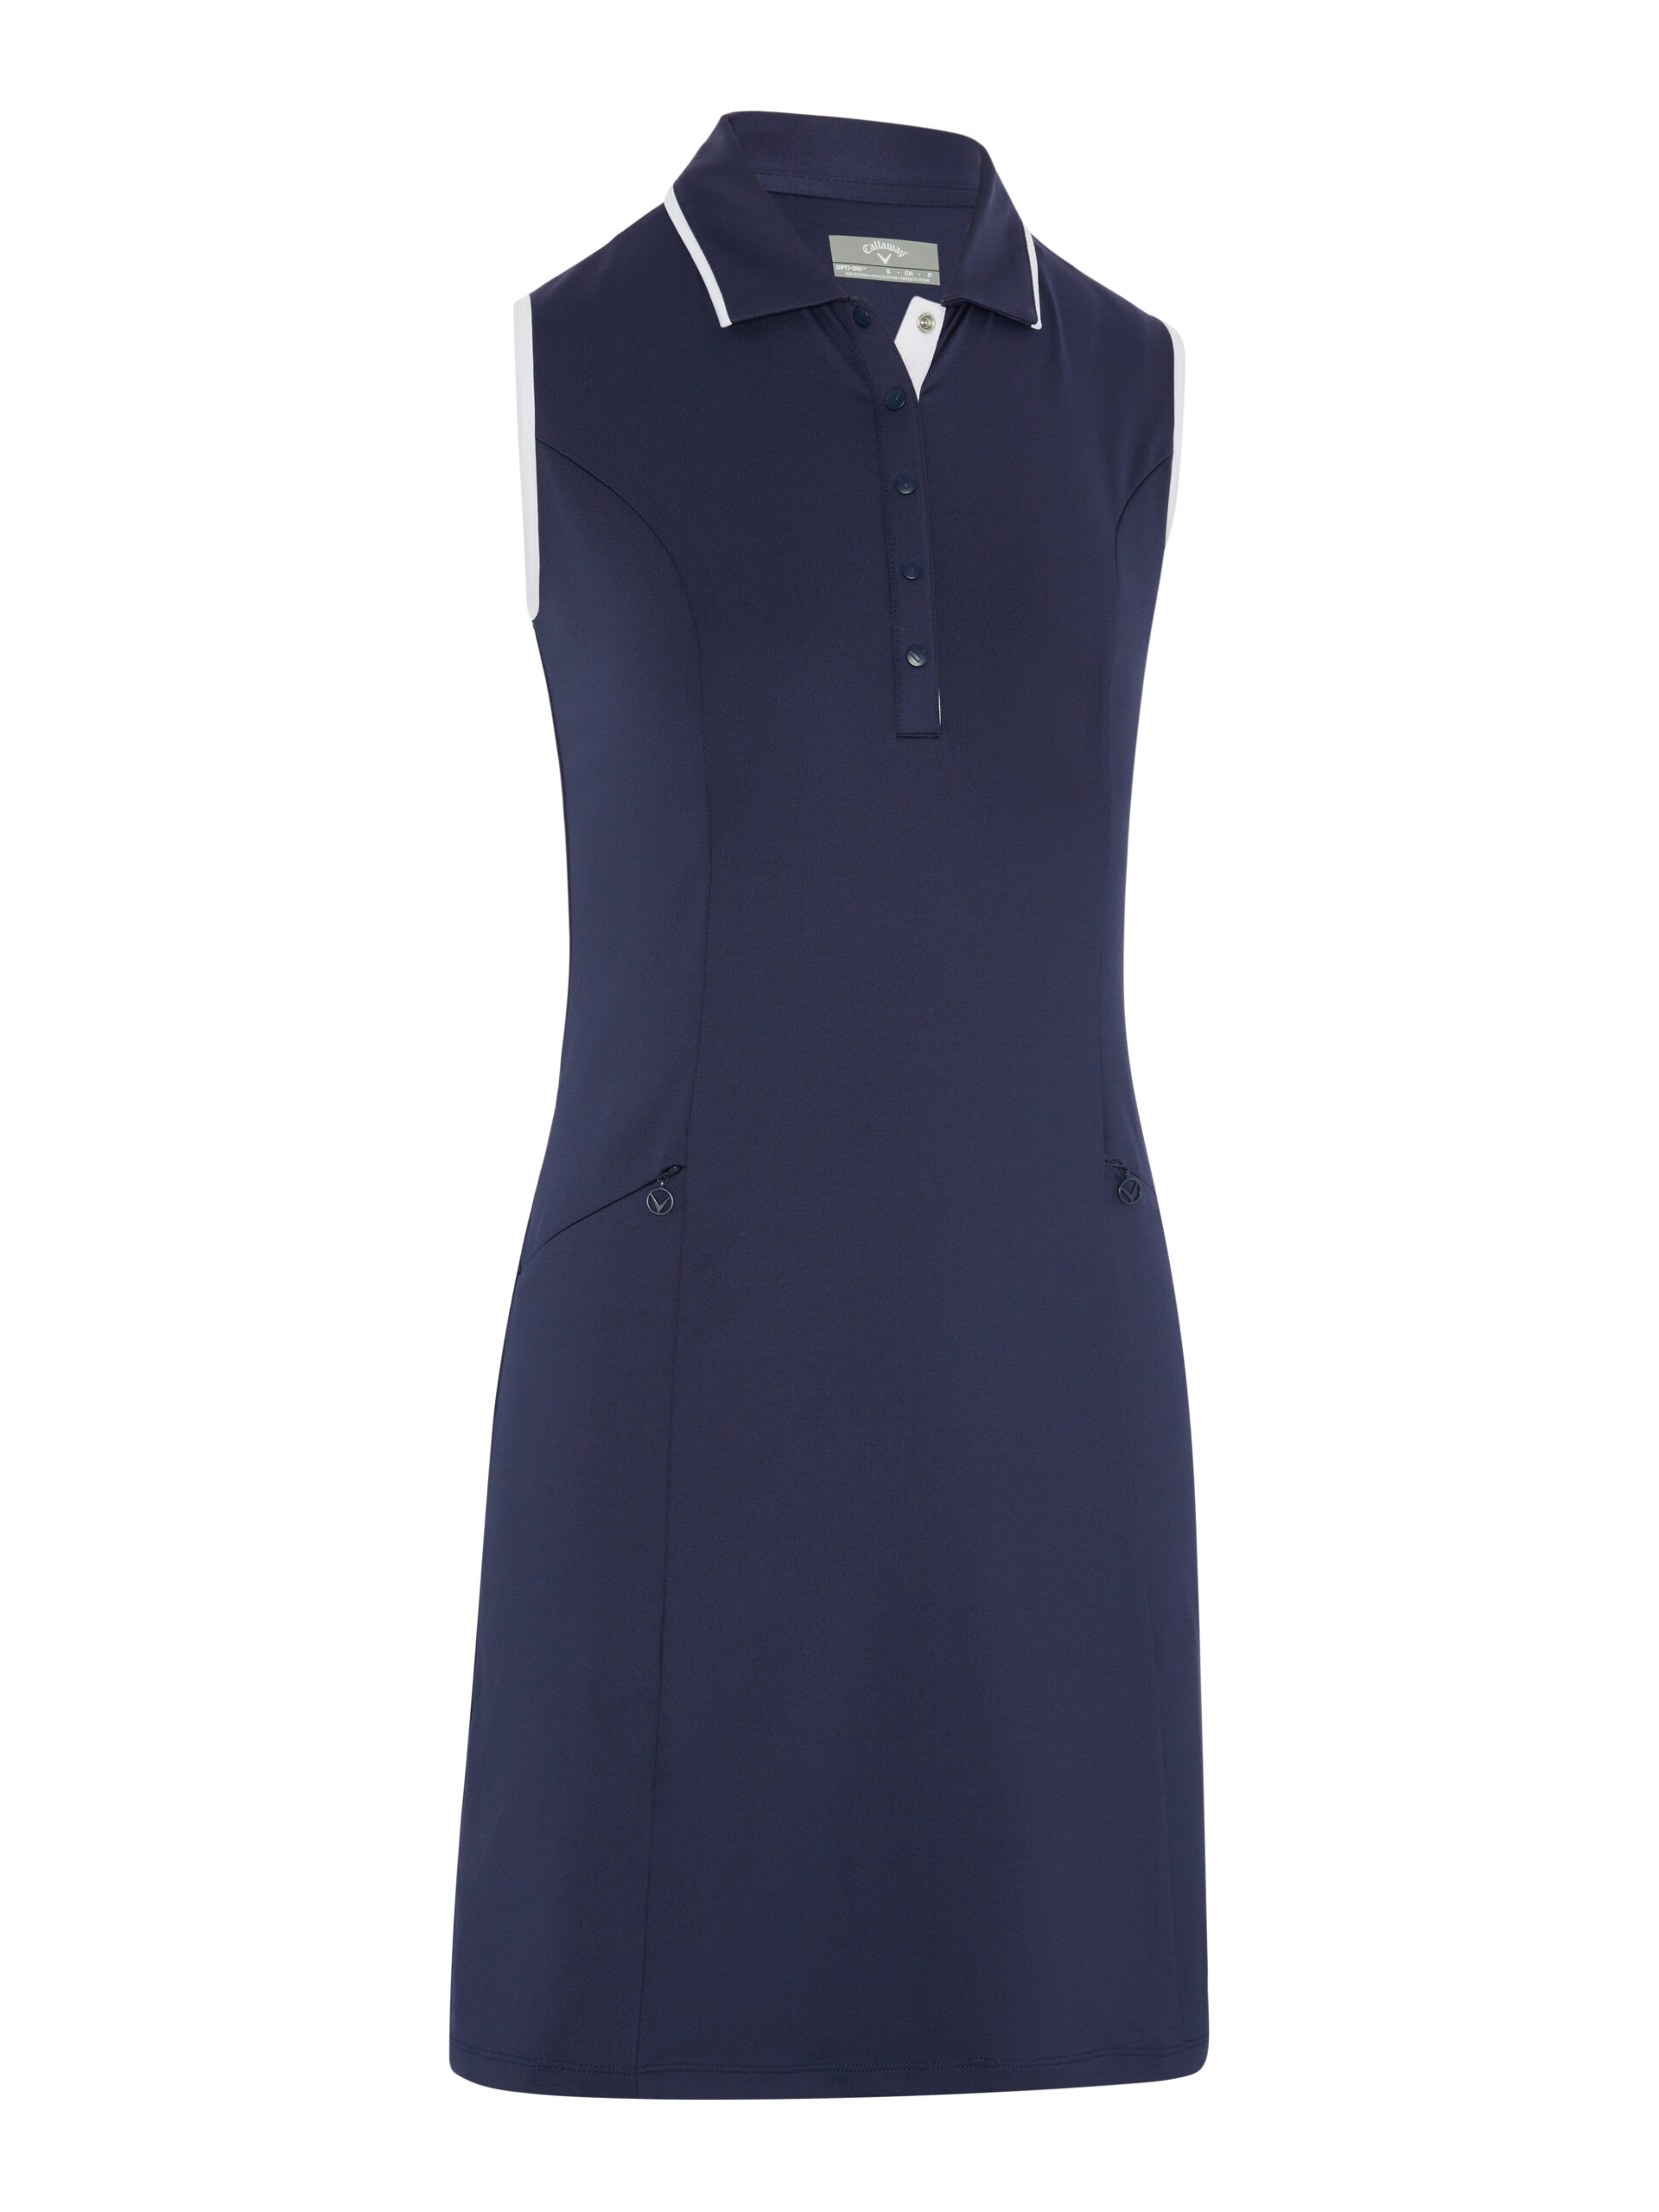 Callaway dámské golfové šaty, tmavě modré, vel. XL